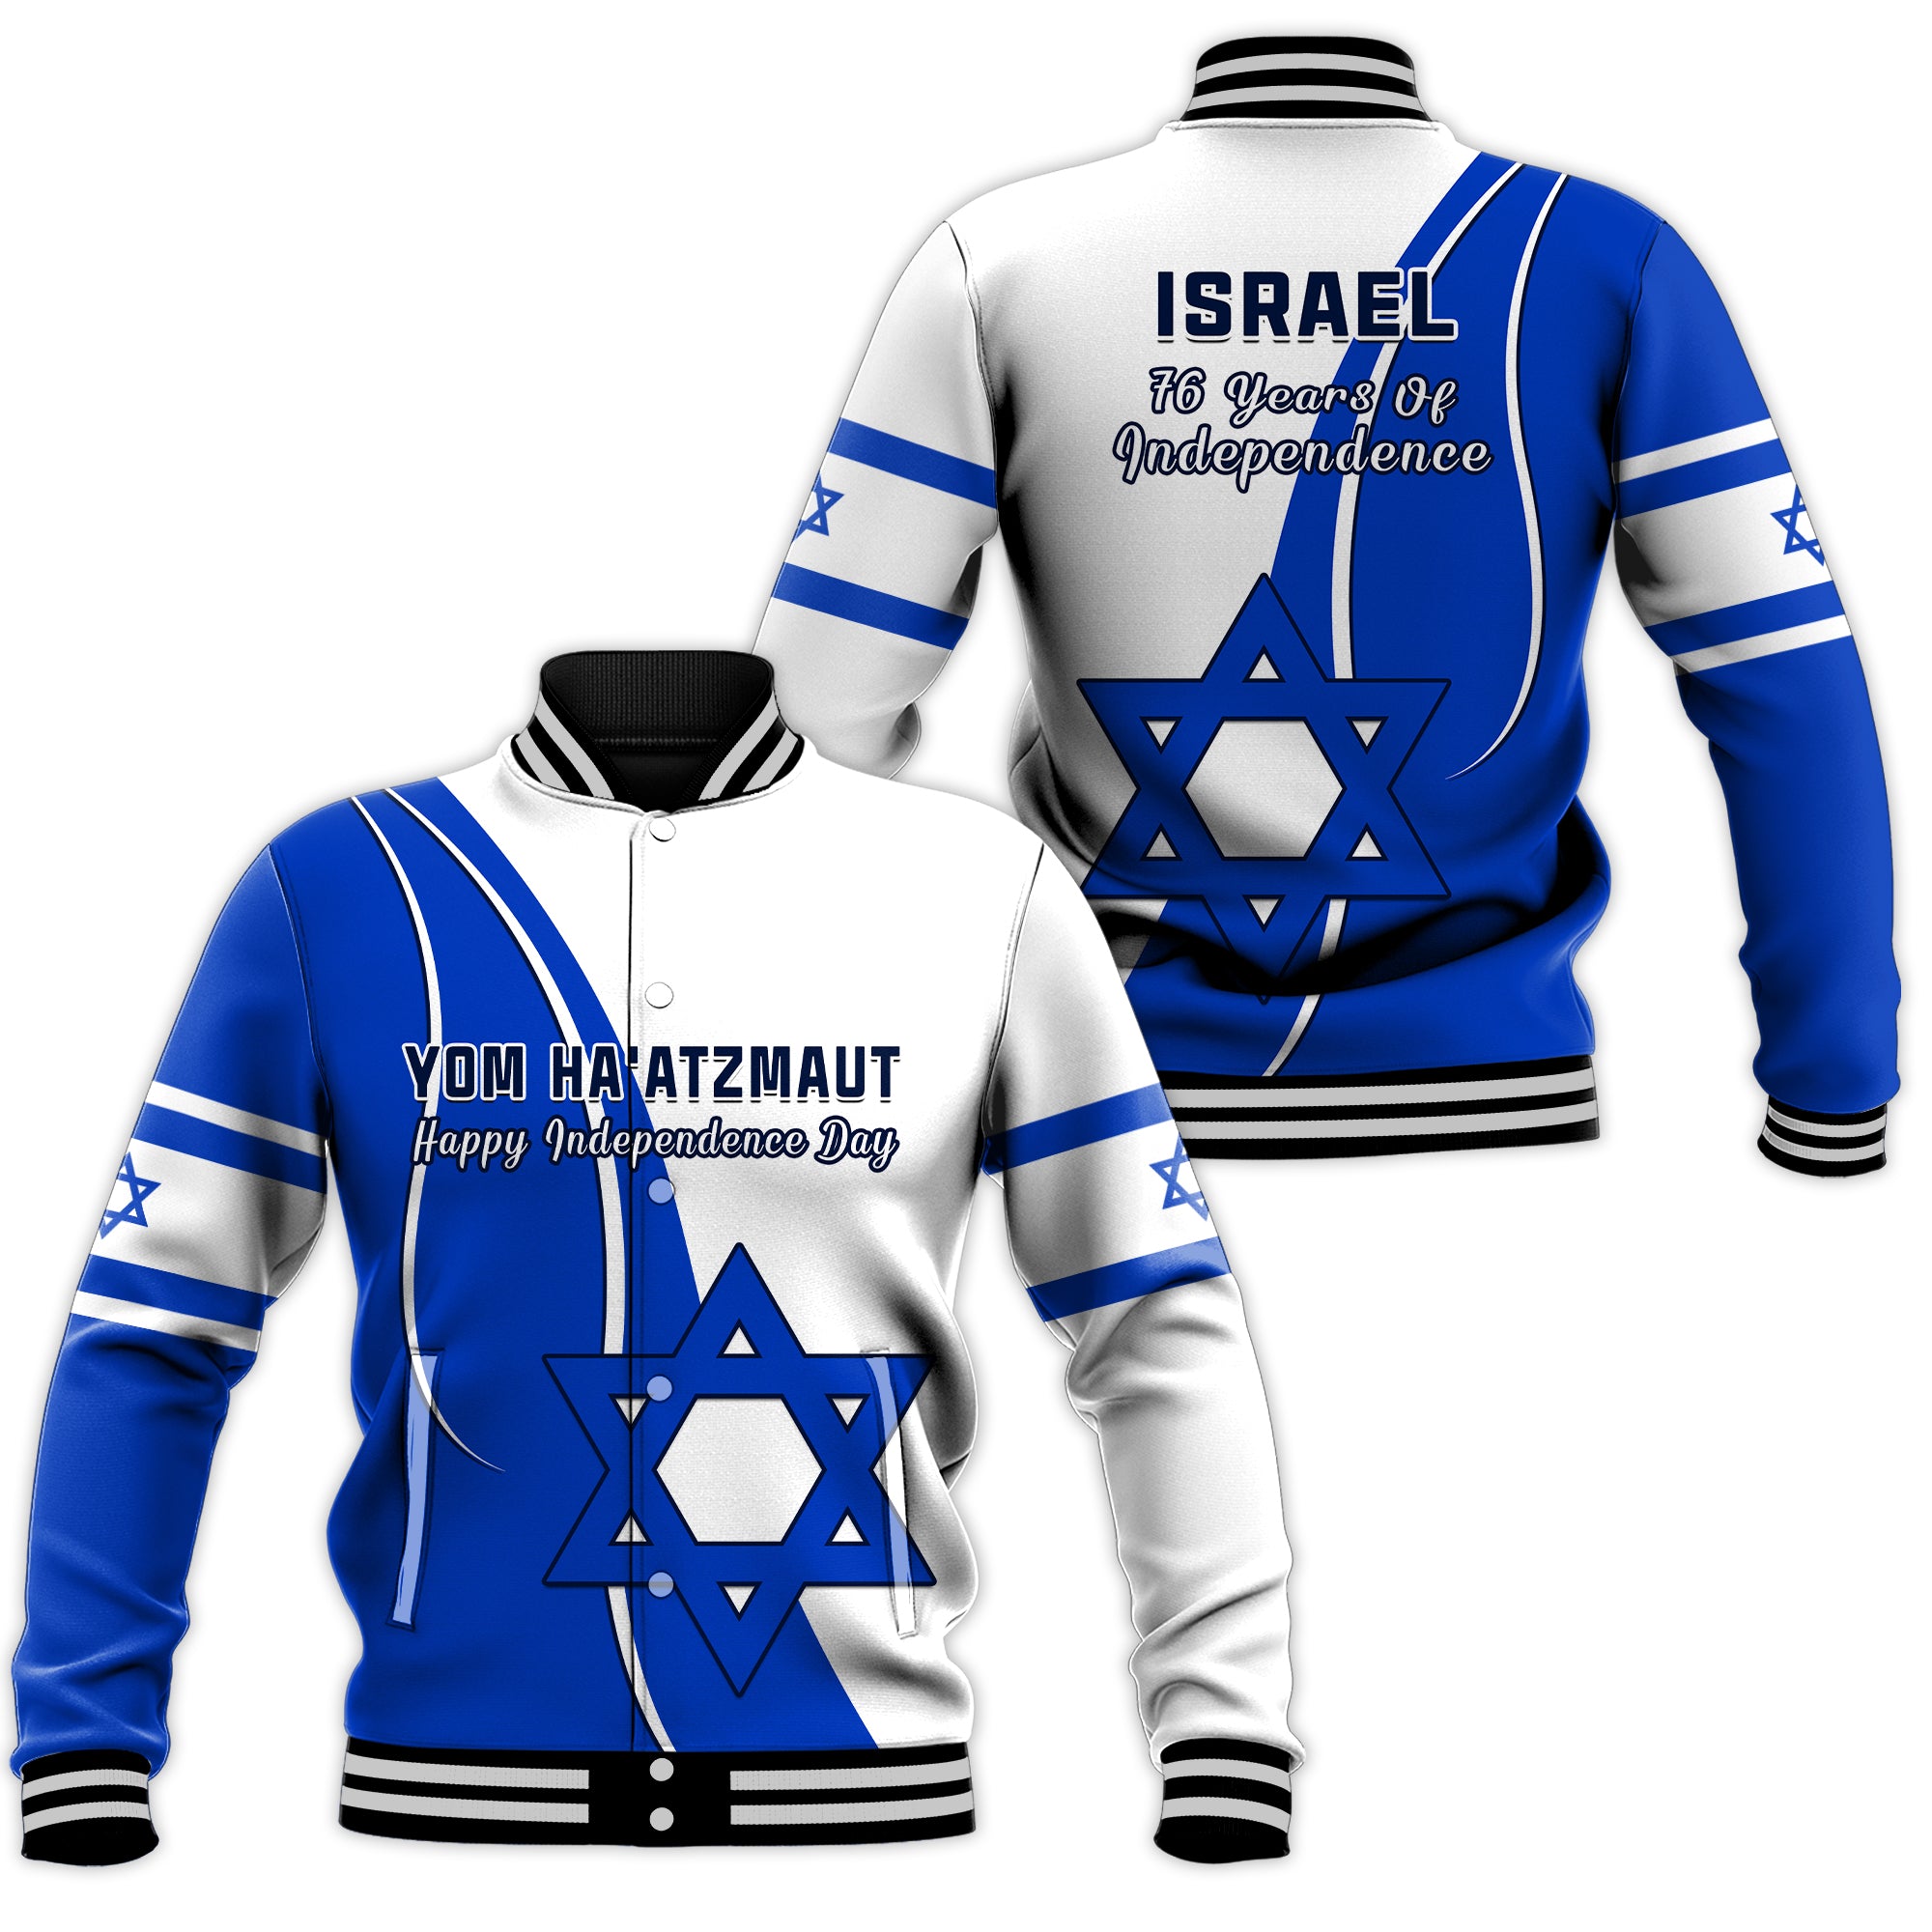 Israel Independence Day Baseball Jacket Yom Haatzmaut Curvel Style LT14